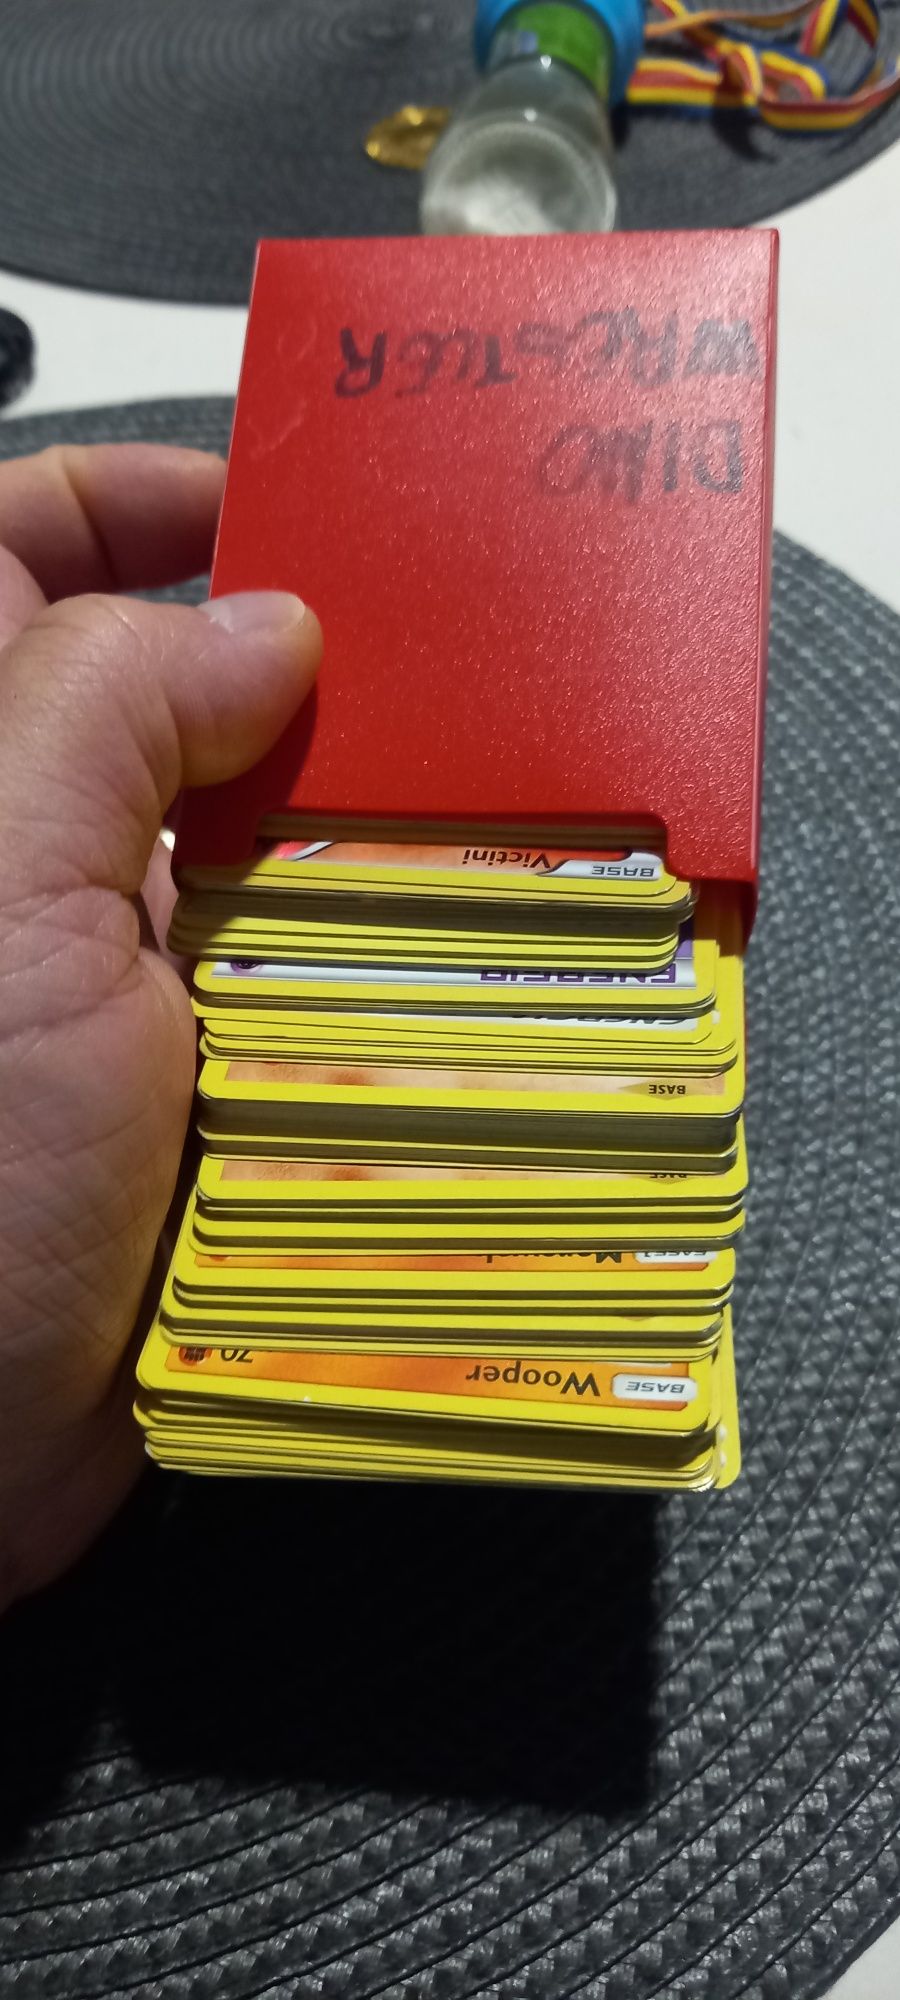 Cartoane Pokemon +1000 Colectie Pikachu/Charizard/Vmax